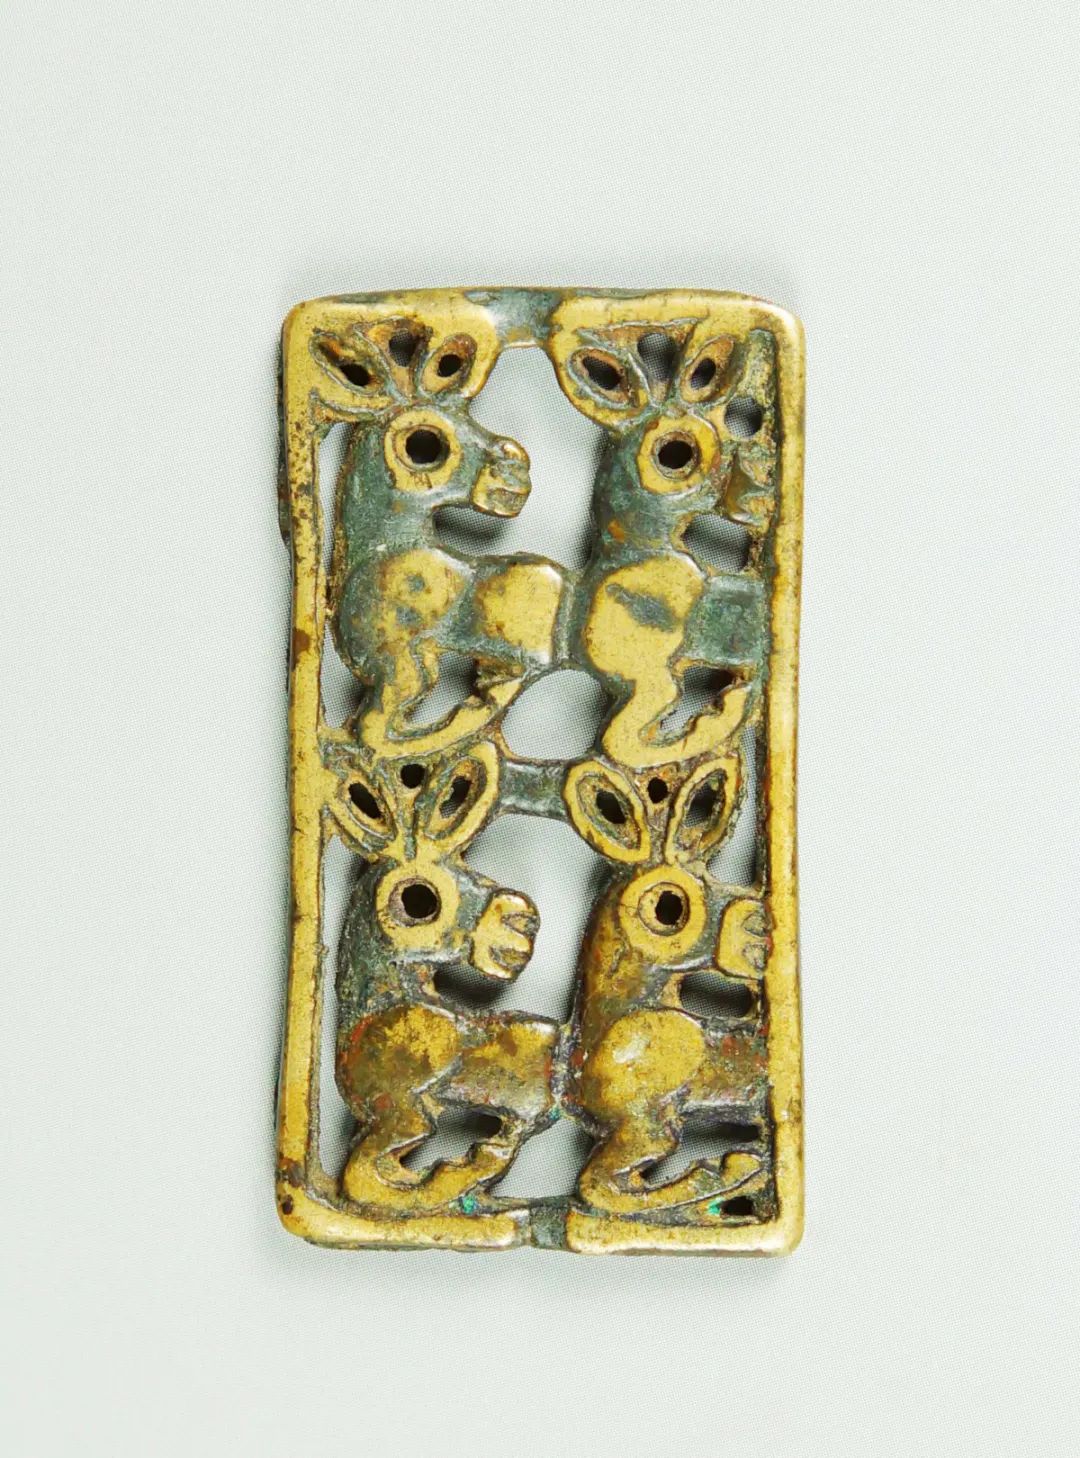 四驴纹青铜饰件 东周 长4.5厘米，宽2厘米 鄂尔多斯市博物院藏